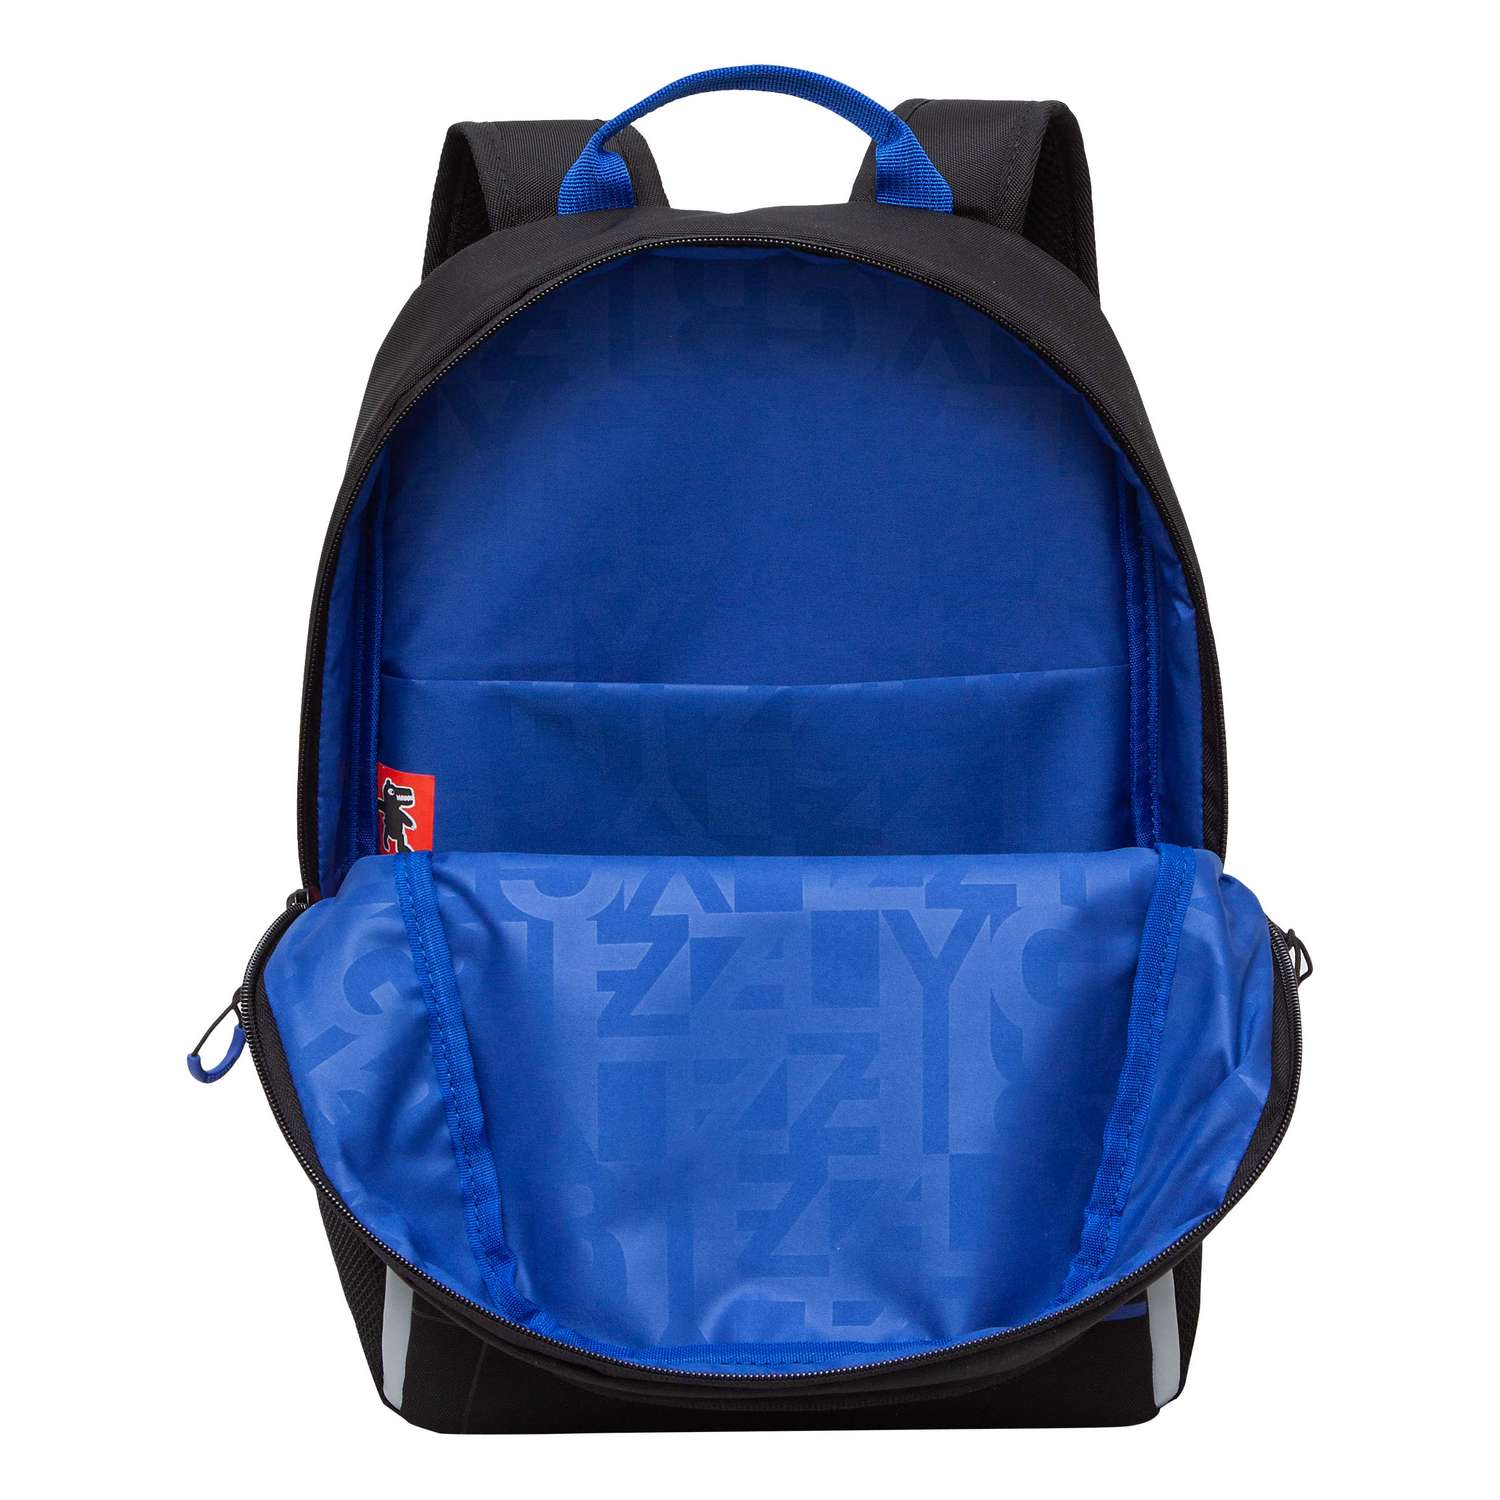 Рюкзак школьный Grizzly Черный-Синий RB-351-1/3 - фото 4